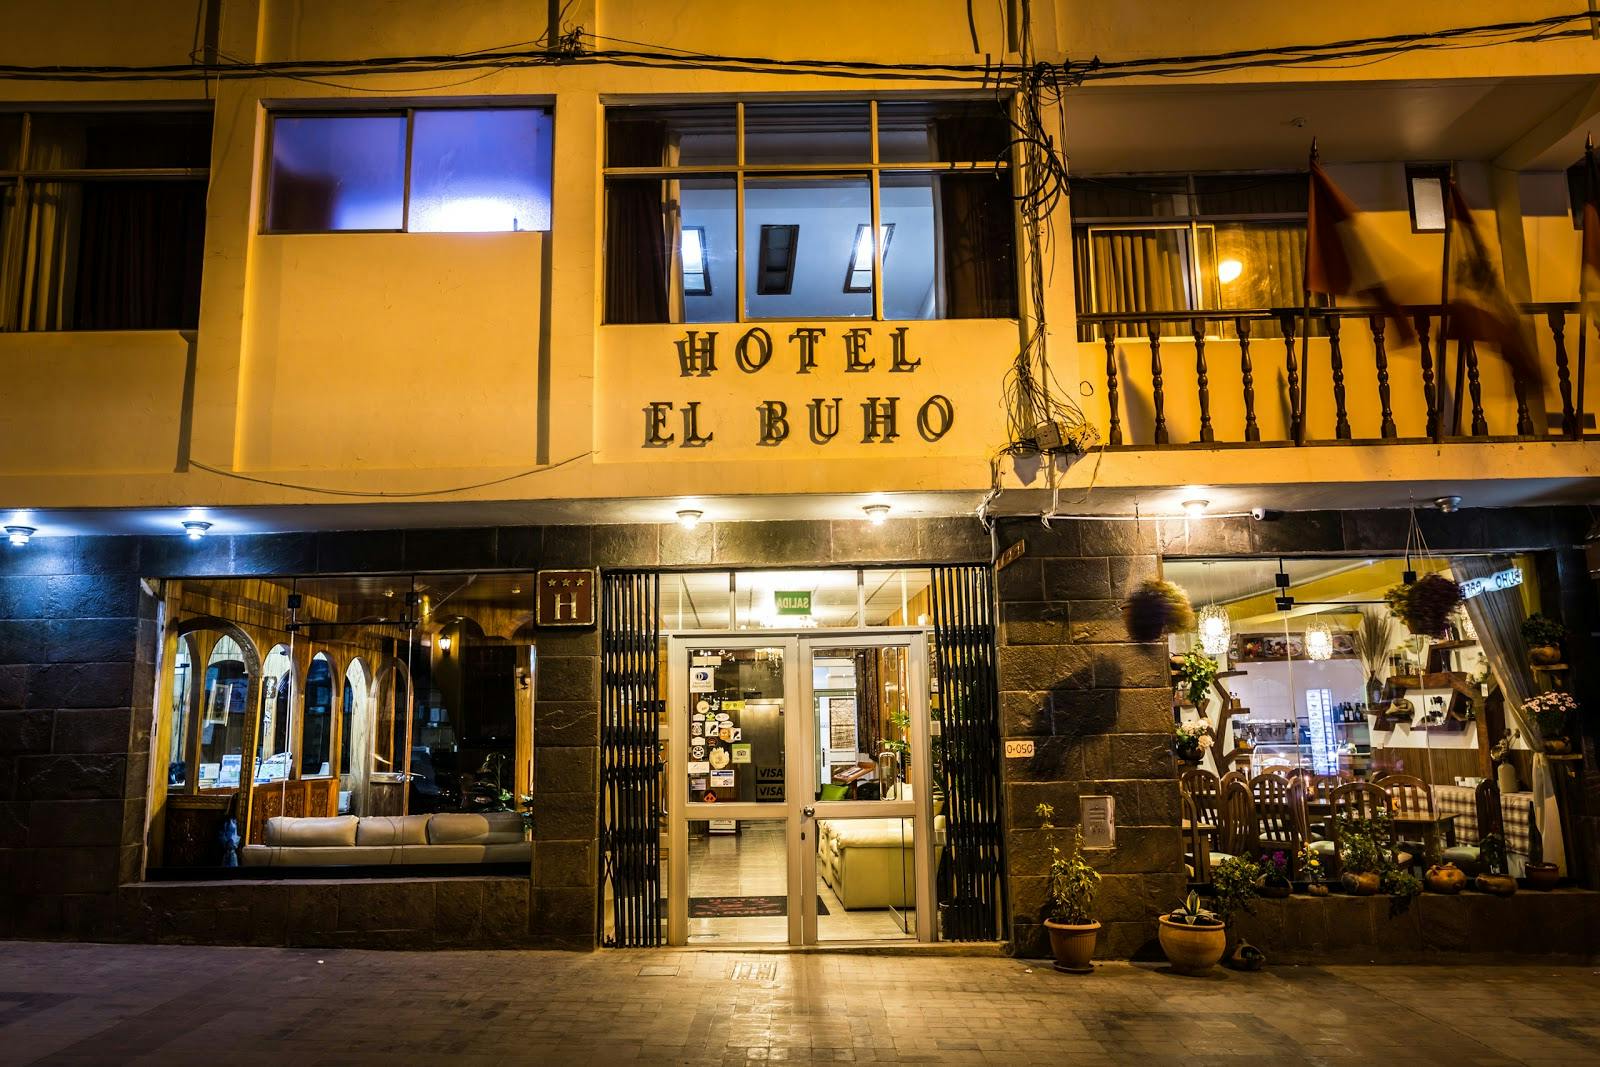 Image - Hotel El Buho